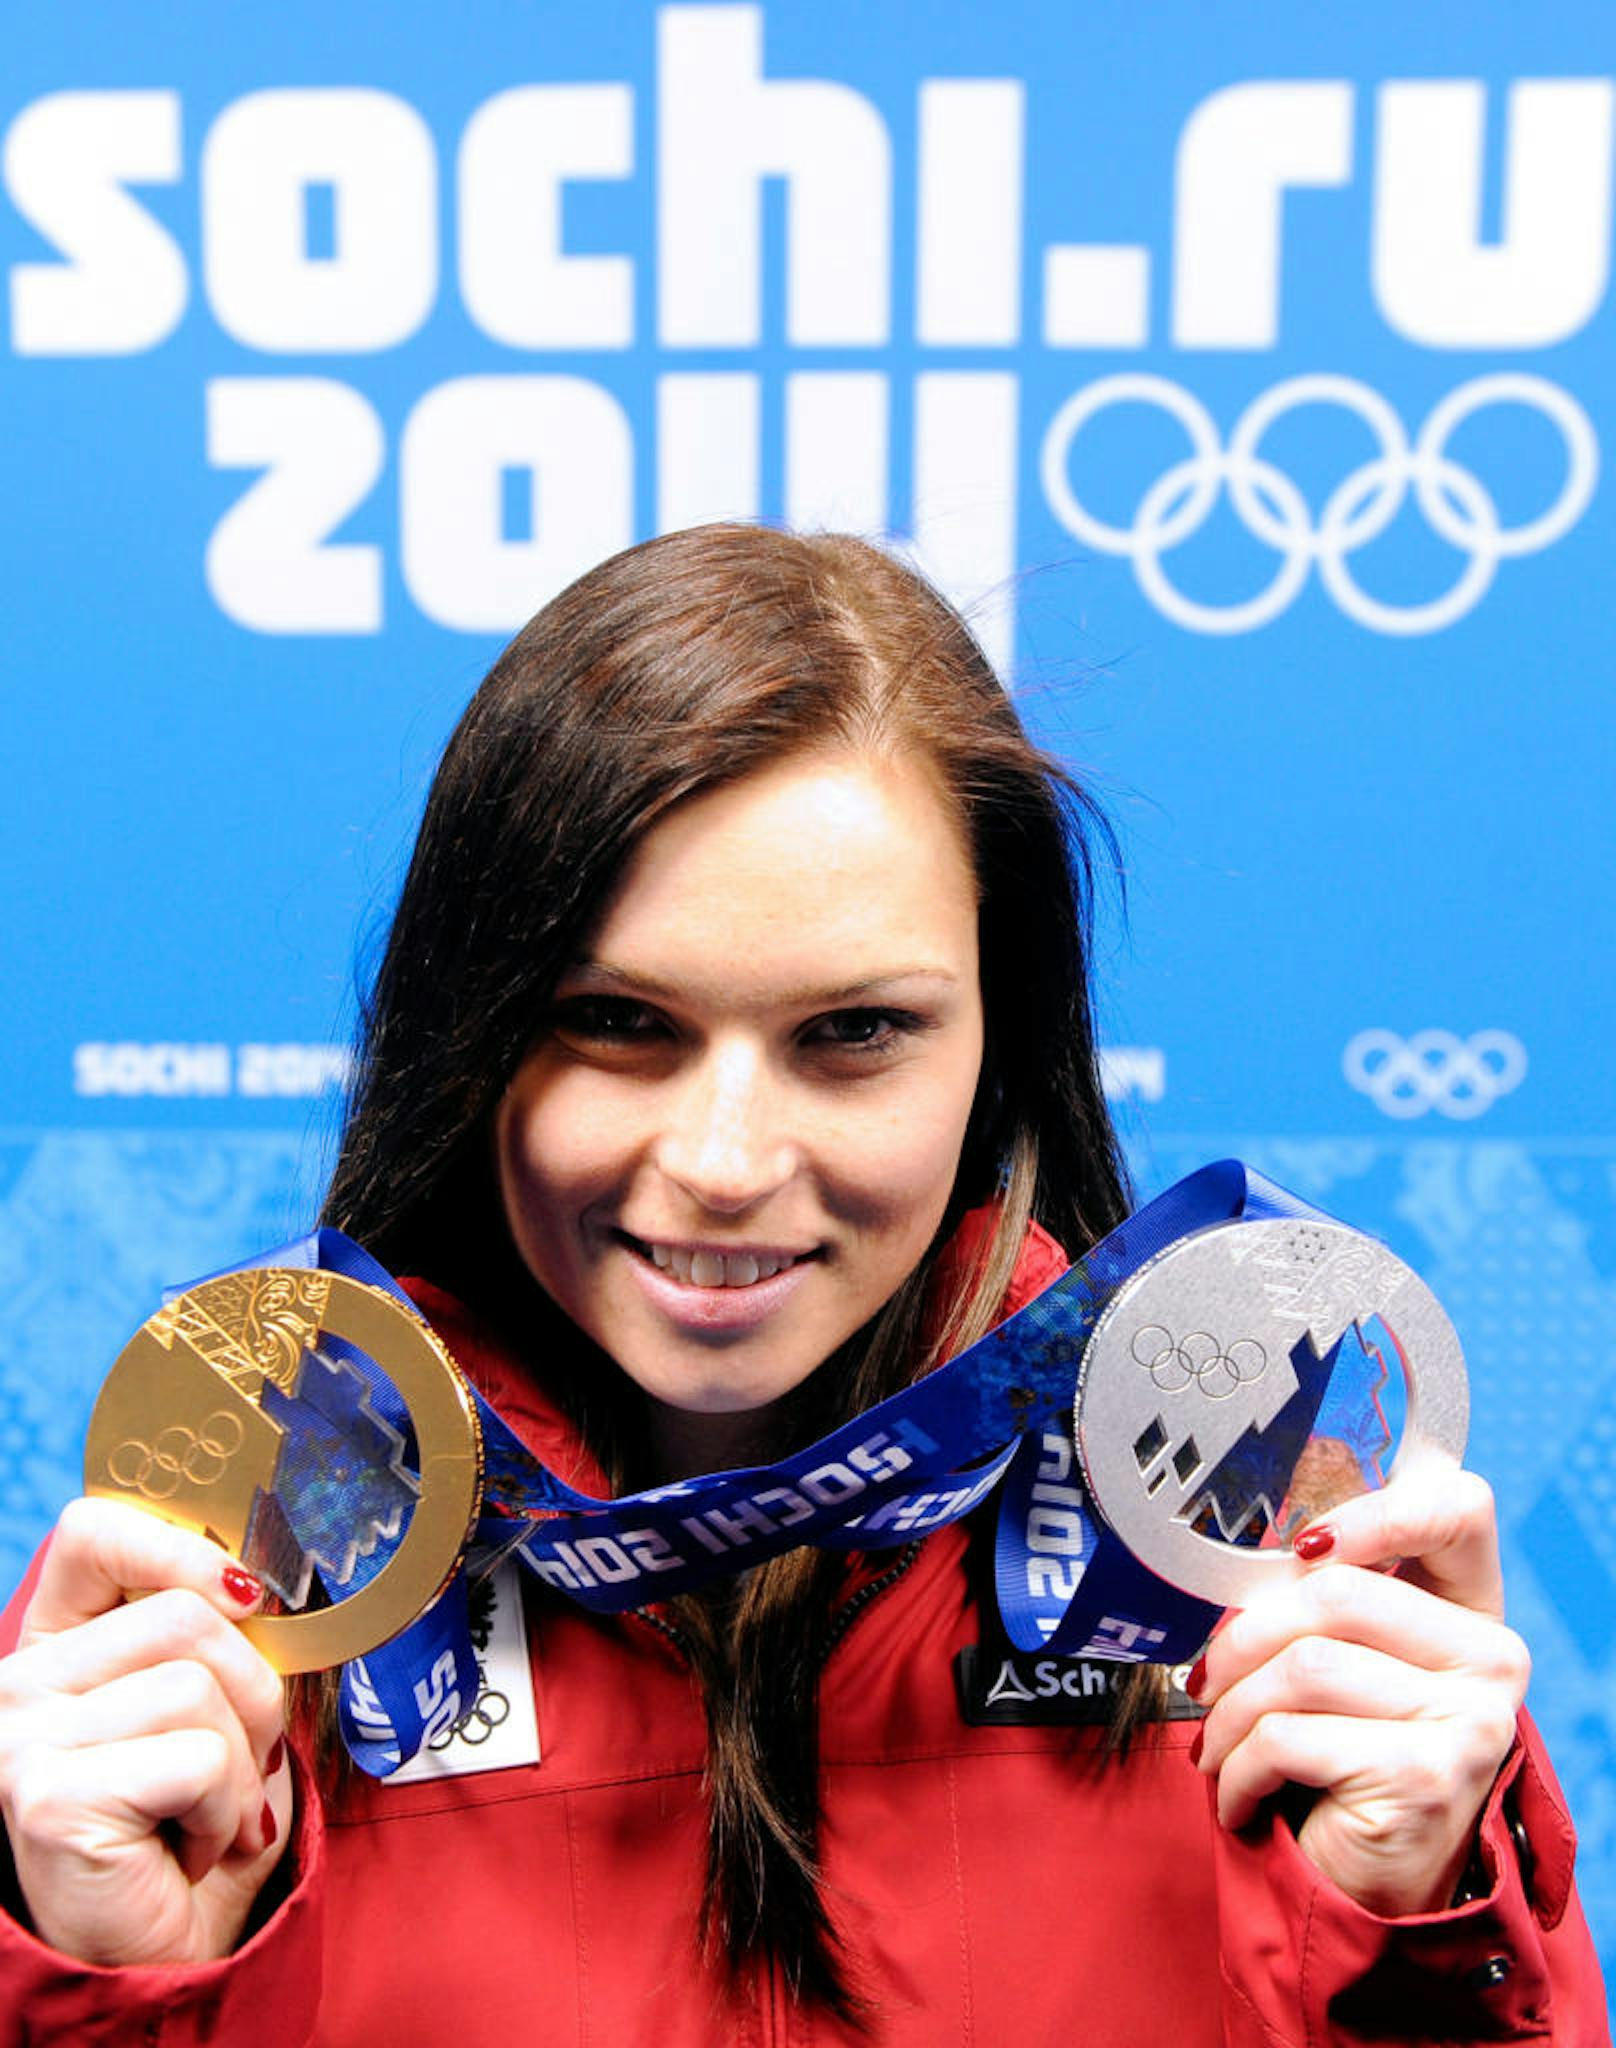 Fenninger holte Silber - und verabschiedete sich mit zwei Medaillen von den Olympischen Winterspielen 2014 in Sotschi.